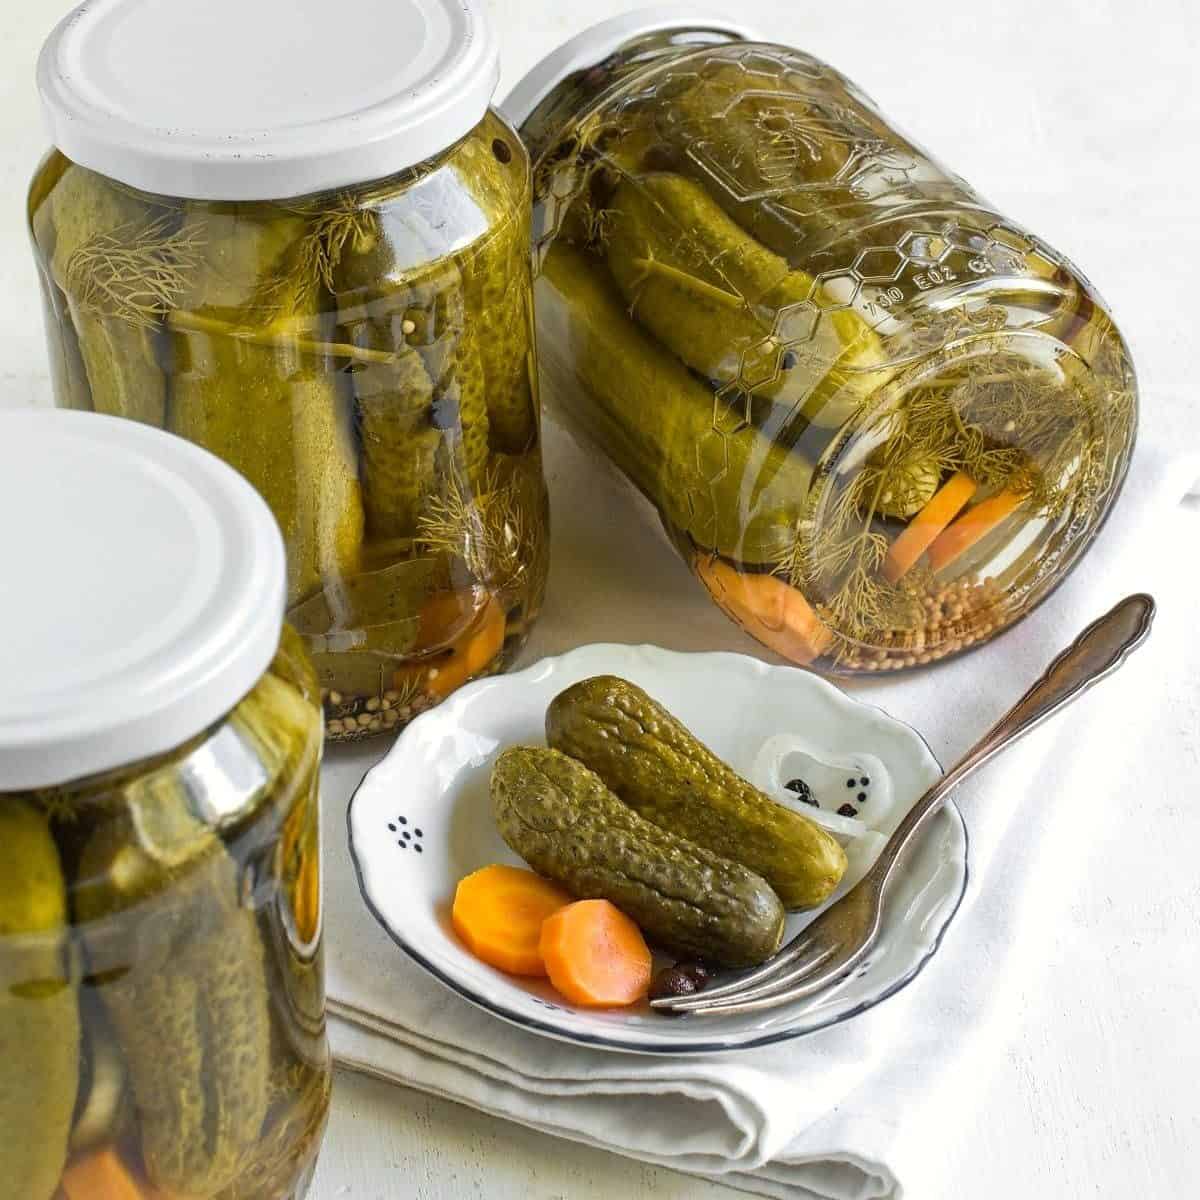 Homemade Czech dill pickles.